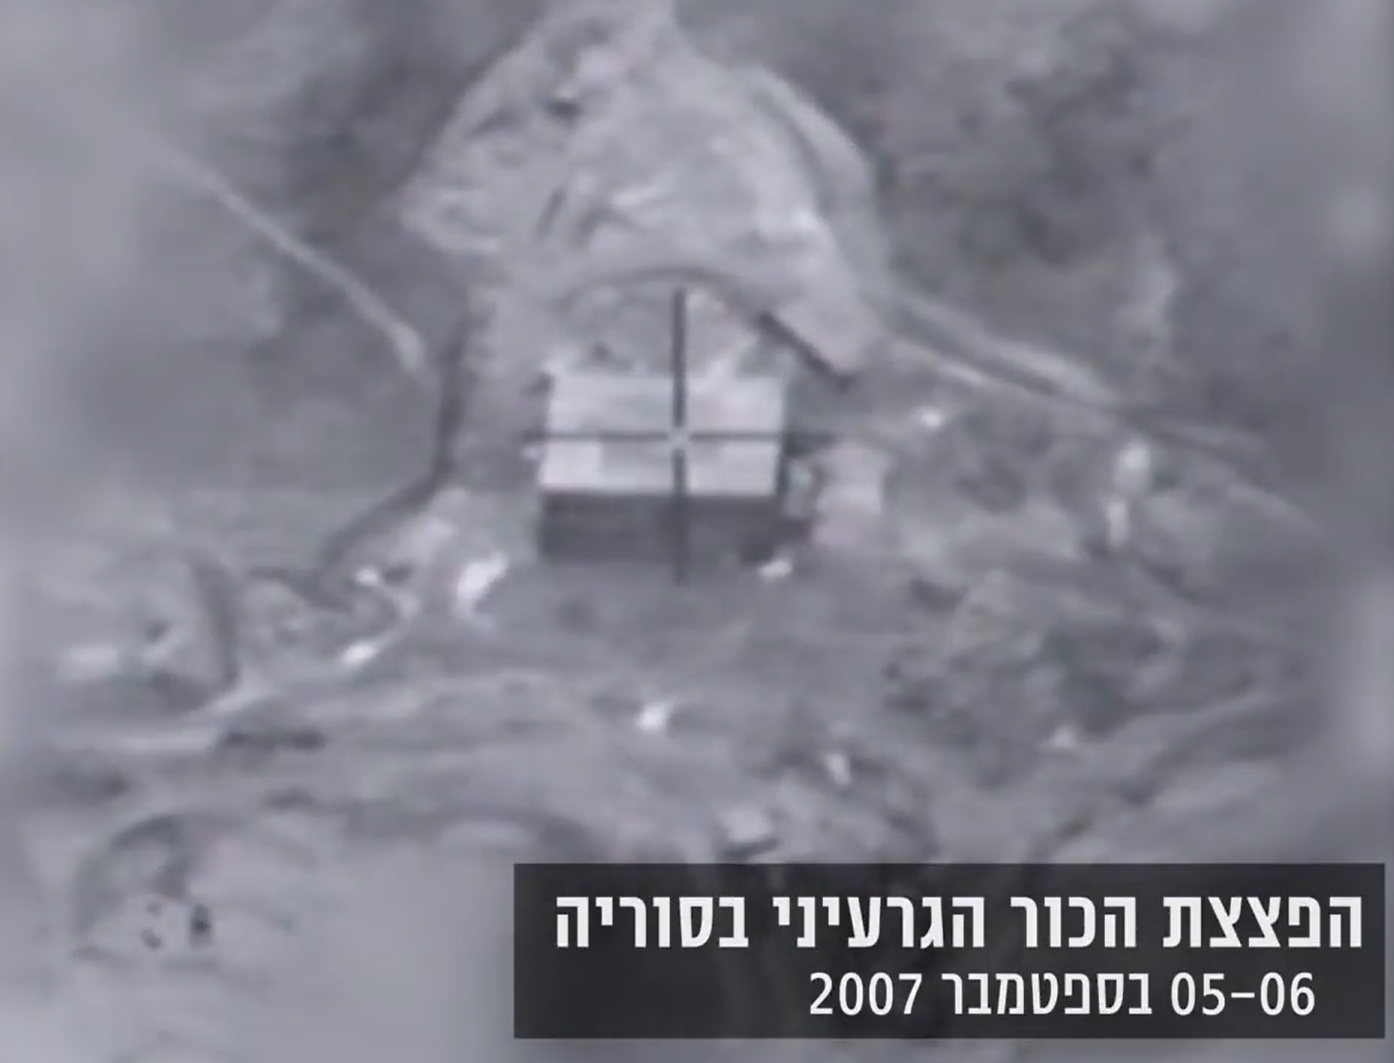 הפצצת הכור בסוריה: ישראל מאשרת לראשונה - תקפנו את הכור הסורי